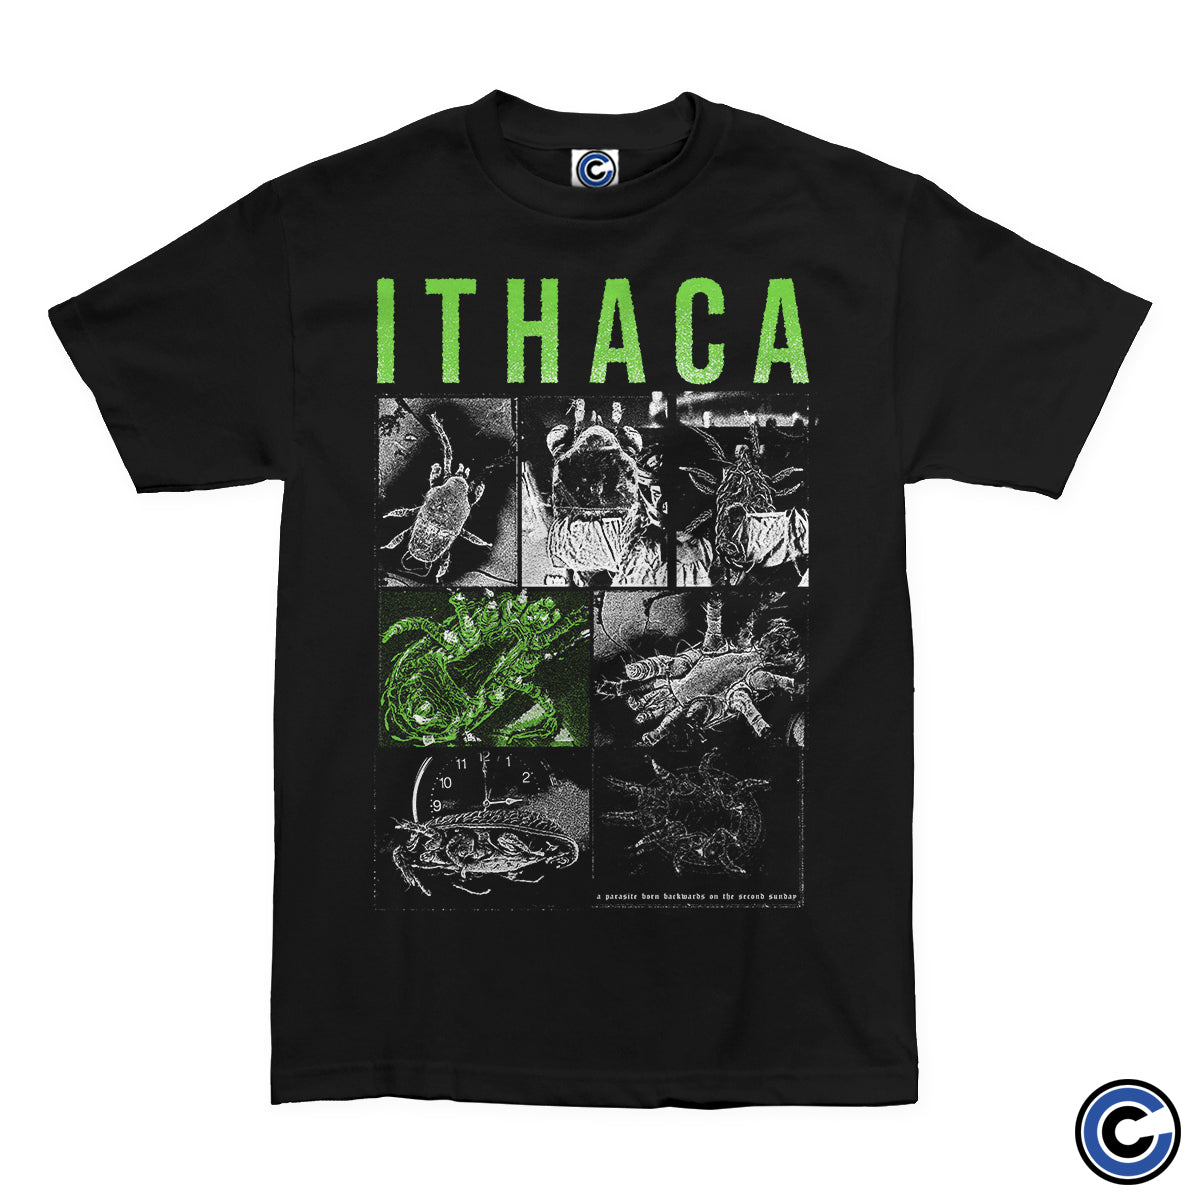 Ithaca "Parasite" Shirt